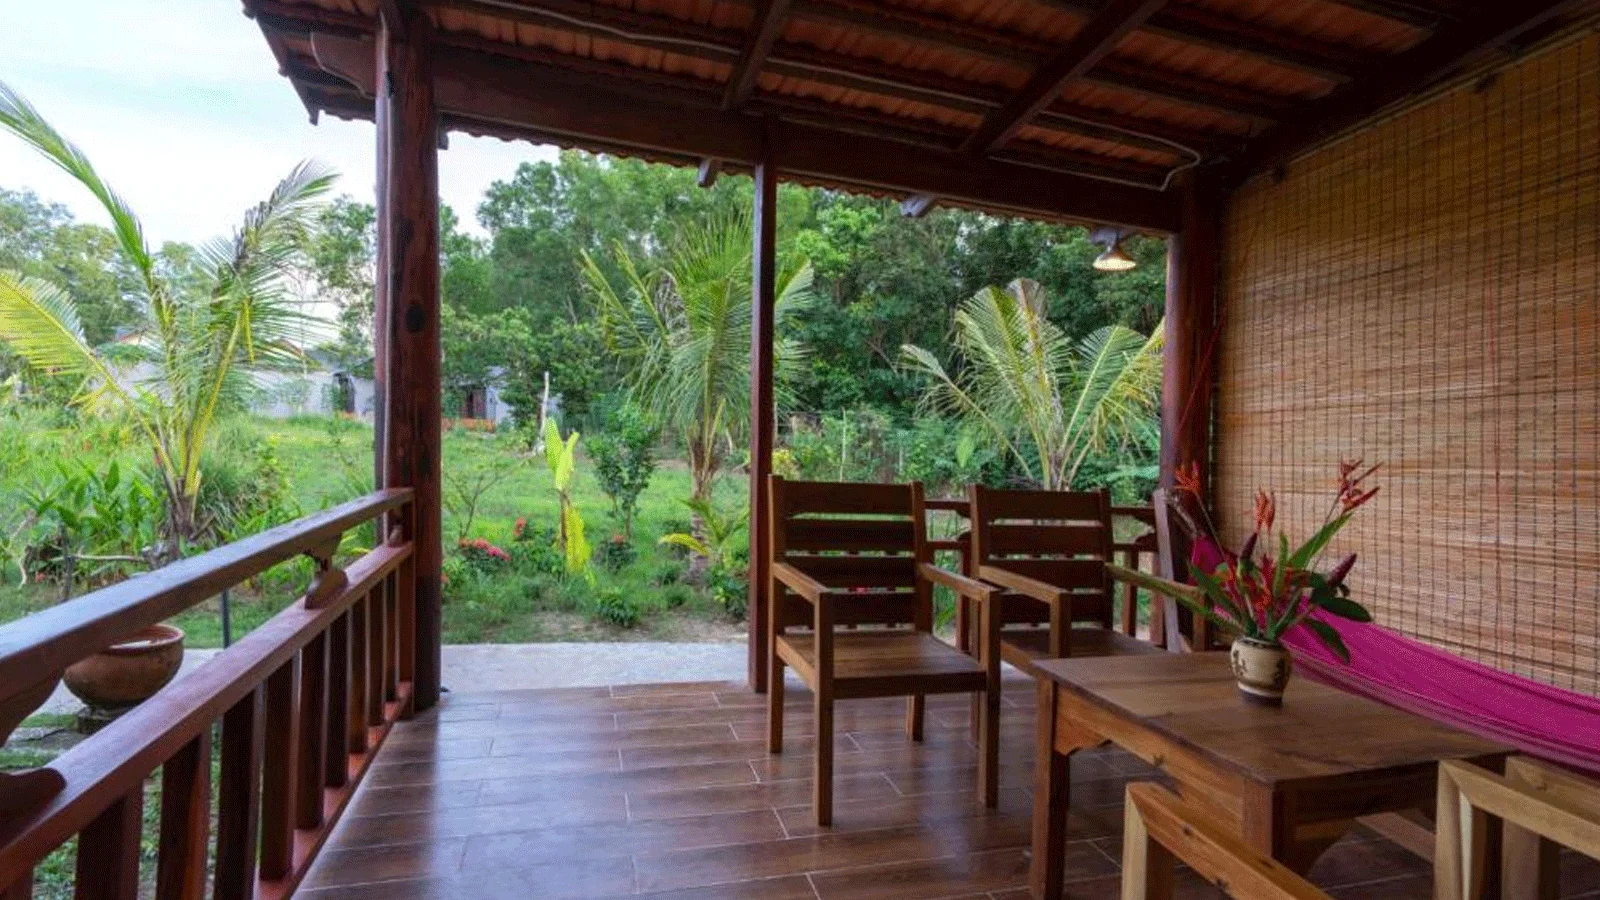 Resort Island Lodge Phú Quốc